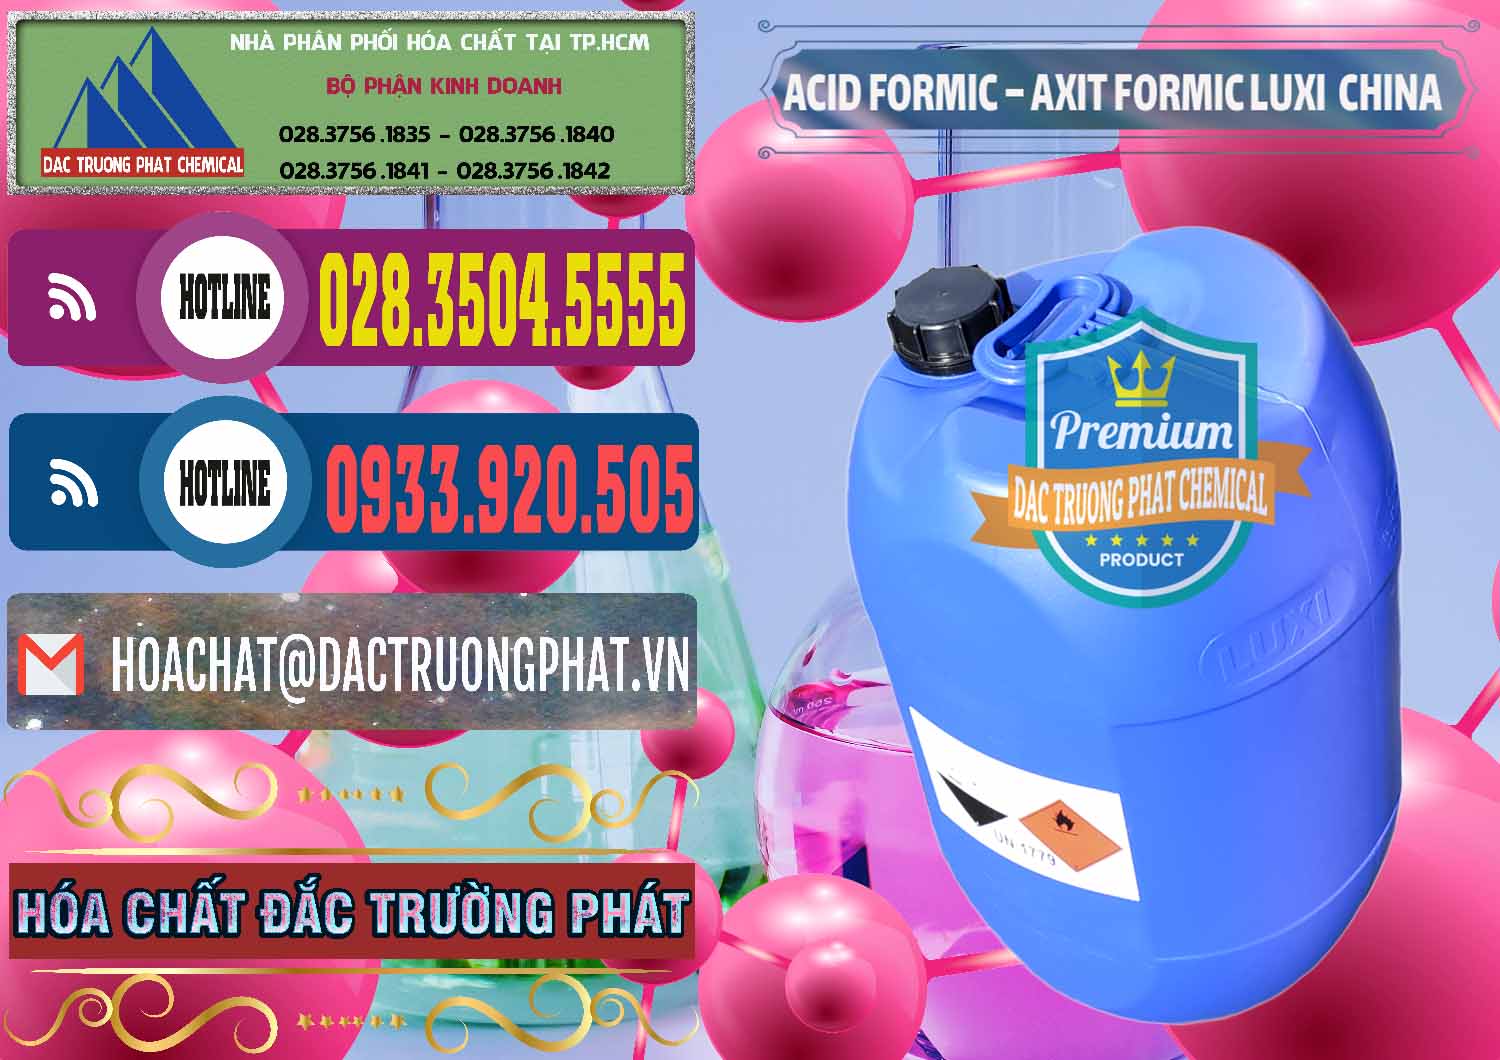 Công ty kinh doanh _ bán Acid Formic - Axit Formic Luxi Trung Quốc China - 0029 - Công ty chuyên bán & phân phối hóa chất tại TP.HCM - muabanhoachat.com.vn